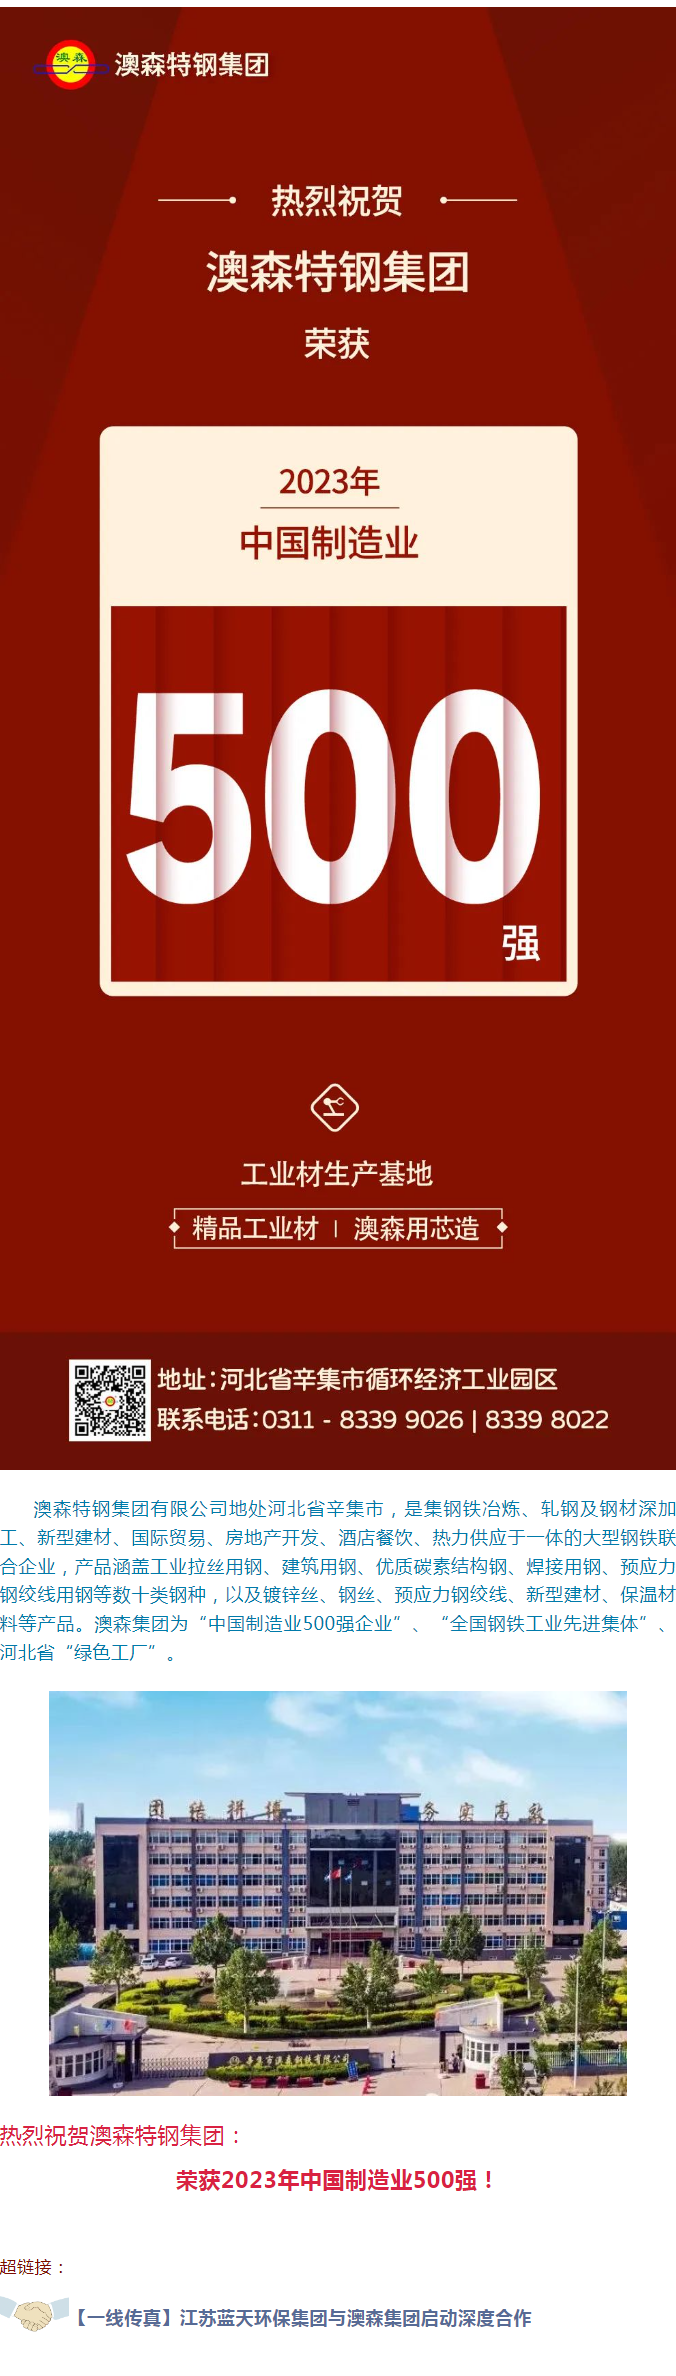 杏盛娱乐(中国)官方网站